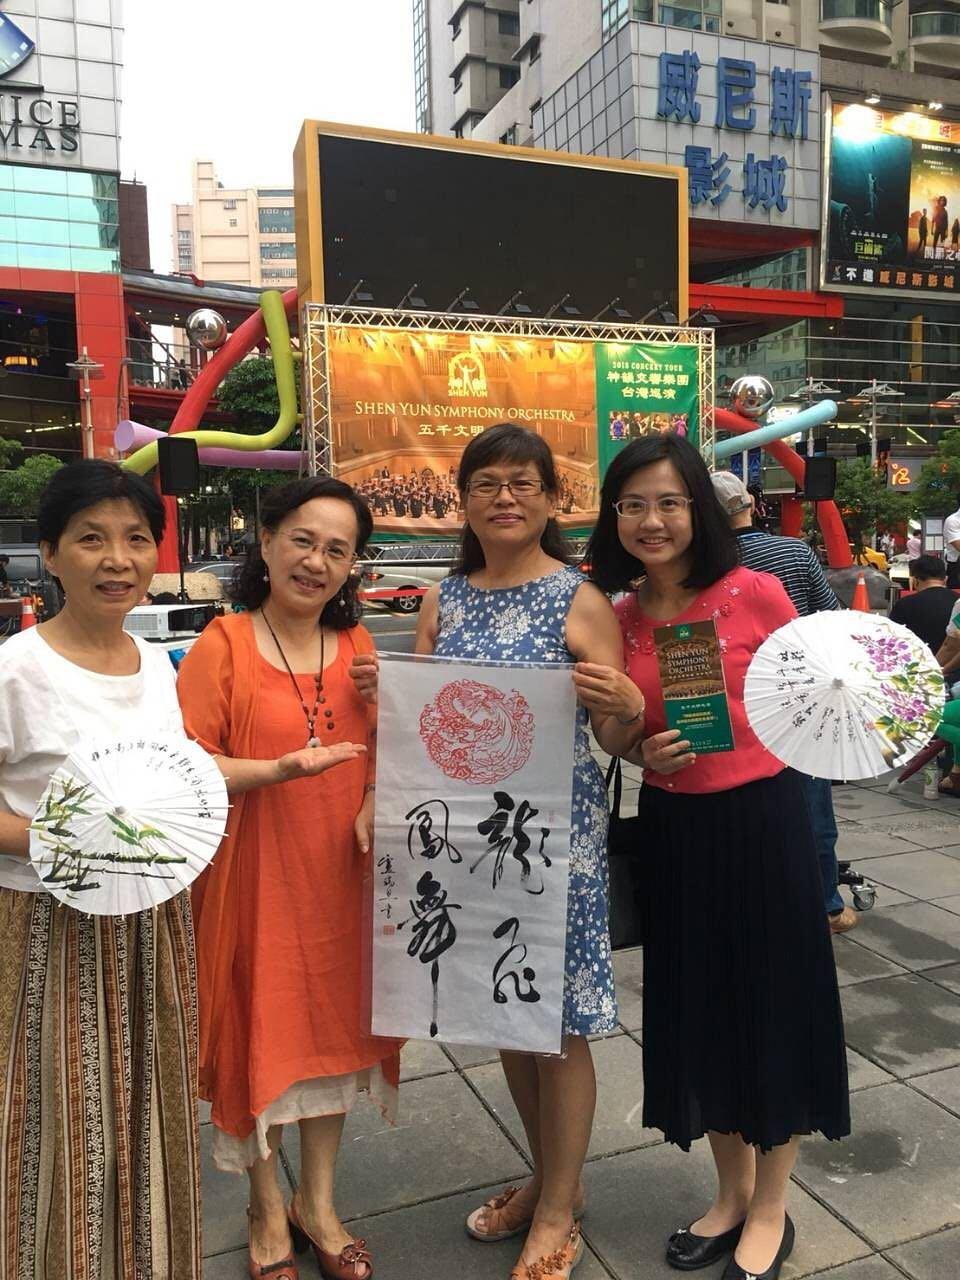 Gospođa Liu (druga s lijeva) na manifestaciji koja promoviše Shen Yun 